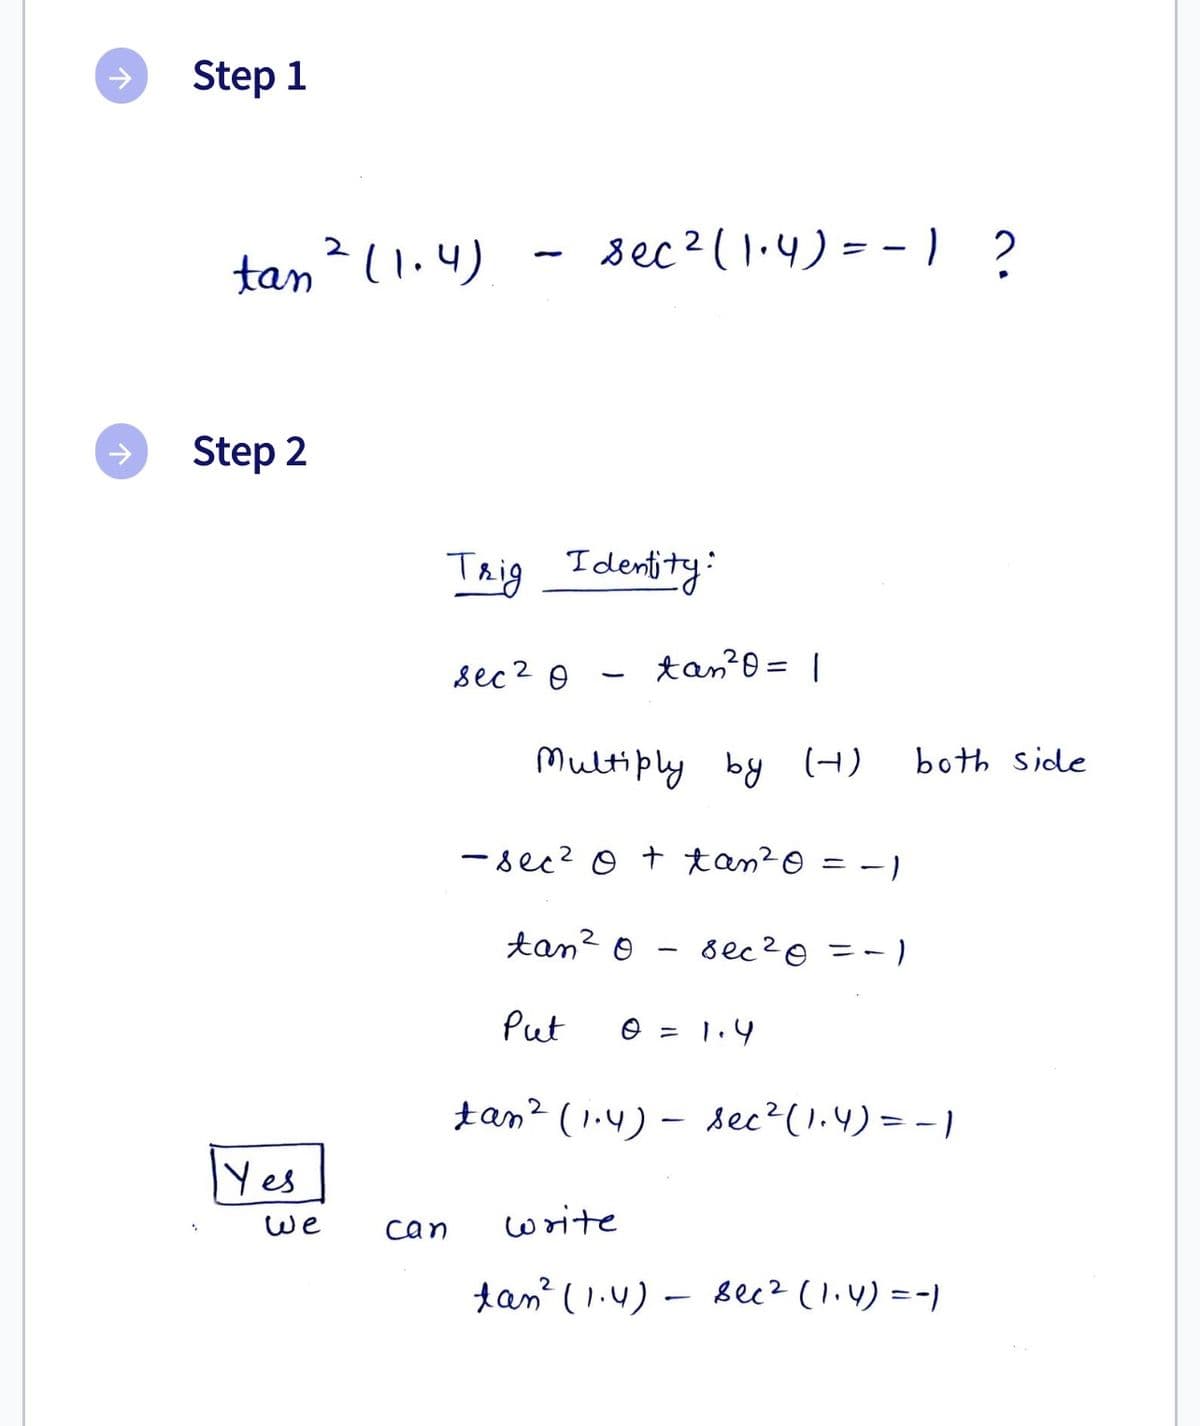 个
↑
Step 1
tan ² (1.4)
Step 2
Yes
We
sec ² (1.4) == 1 ?
Trig Identity:
sec 2 Ө
can
tan ²0 = 1
Multiply by (4)
-sec² 0 + tan ²0
2
tan ²0 sec ² 0 = -1
Put
write
0 = 1.4
both side
tan² (1.4)- sec ² (1.4) = -1
tan² (1.4) - sec² (1₁4) = -)